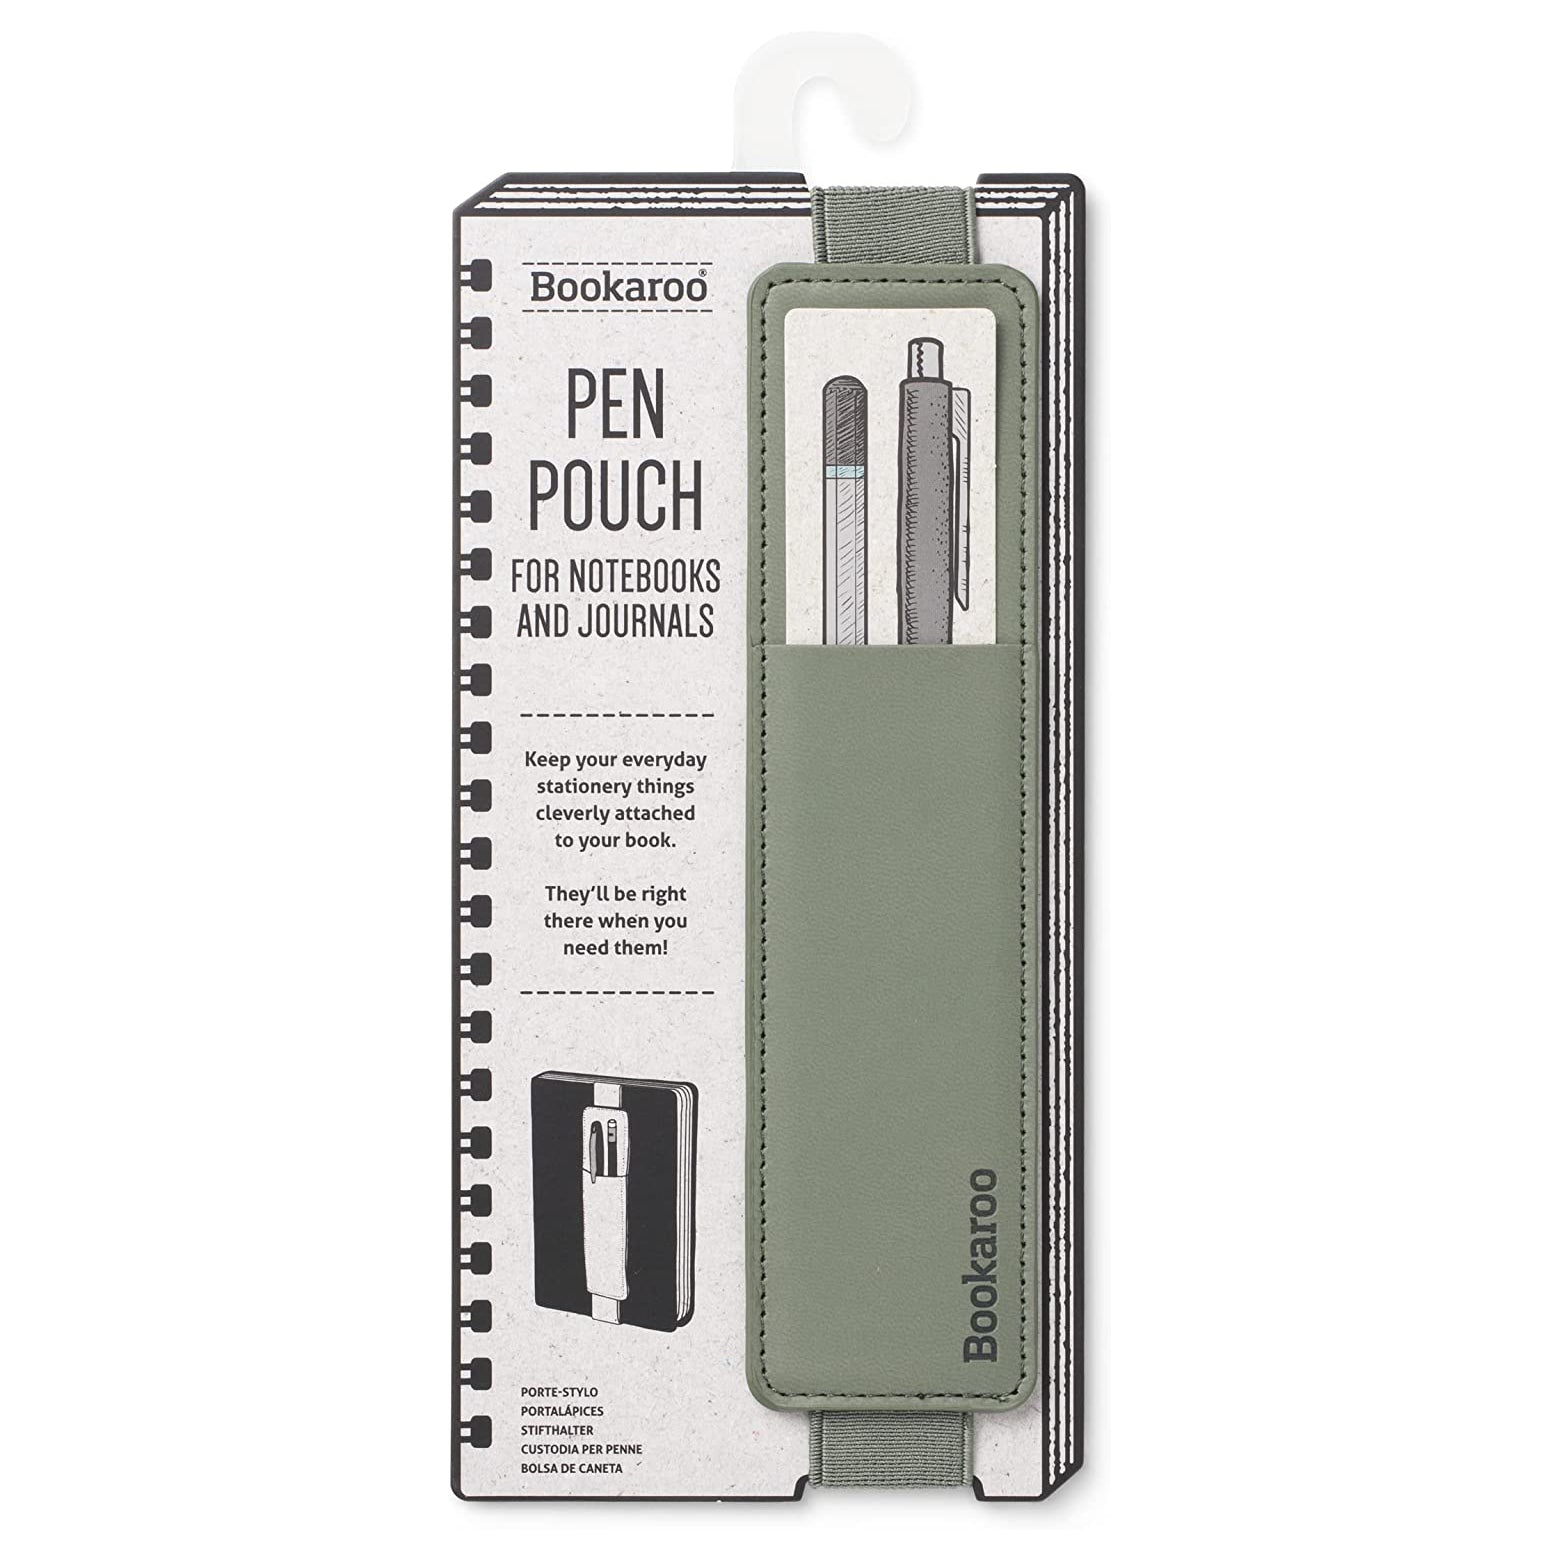 Fern Bookaroo Pen Pouch in packaging